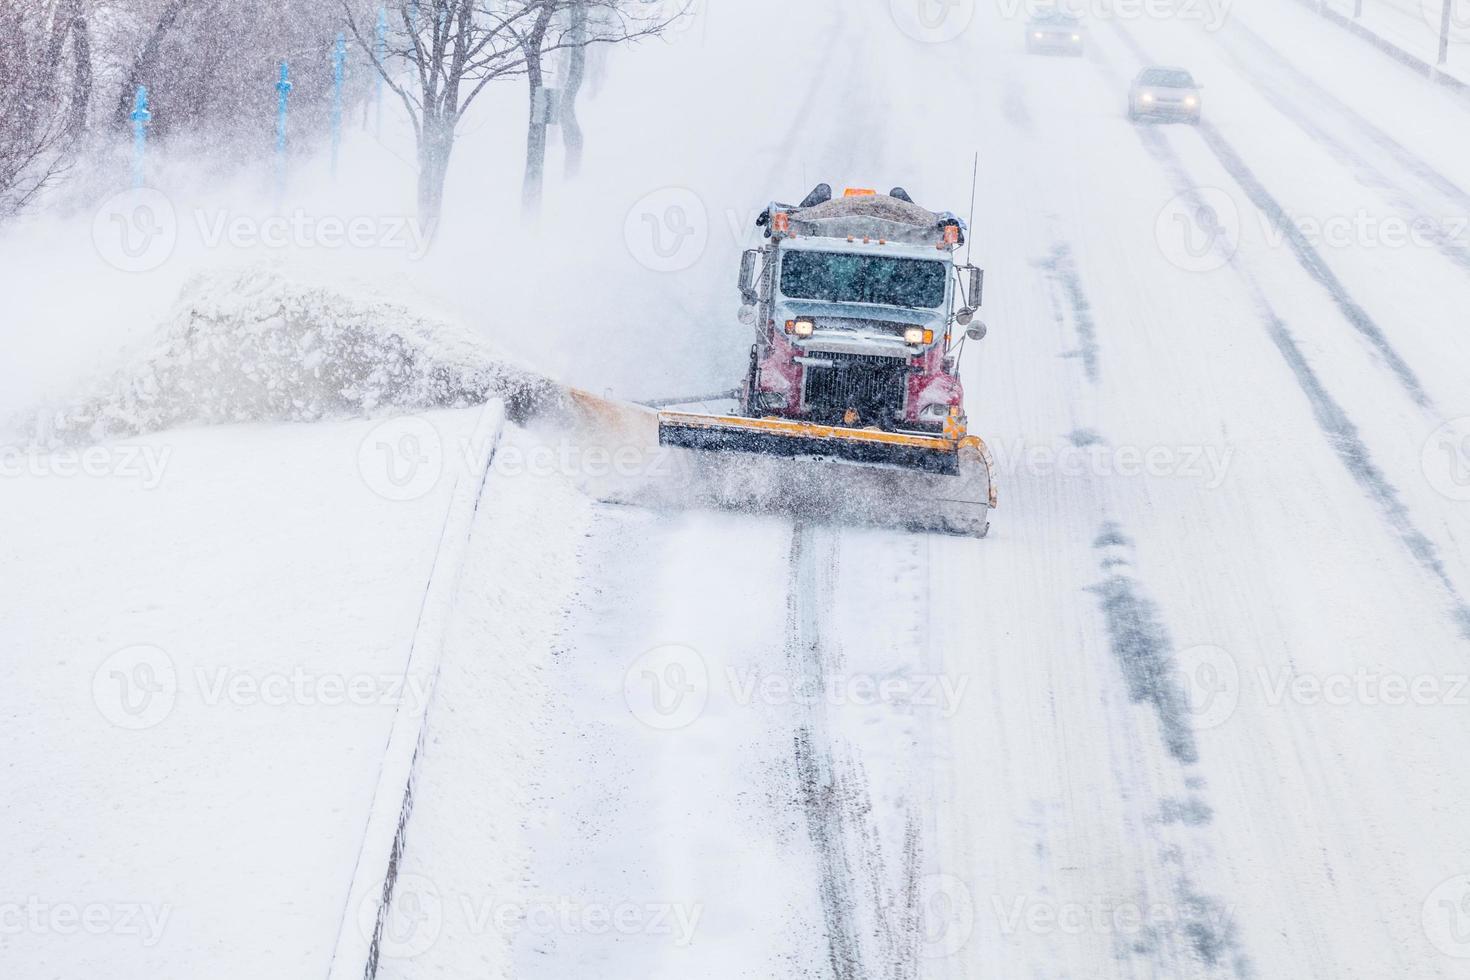 chasse-neige enlevant la neige de l'autoroute pendant une tempête de neige photo